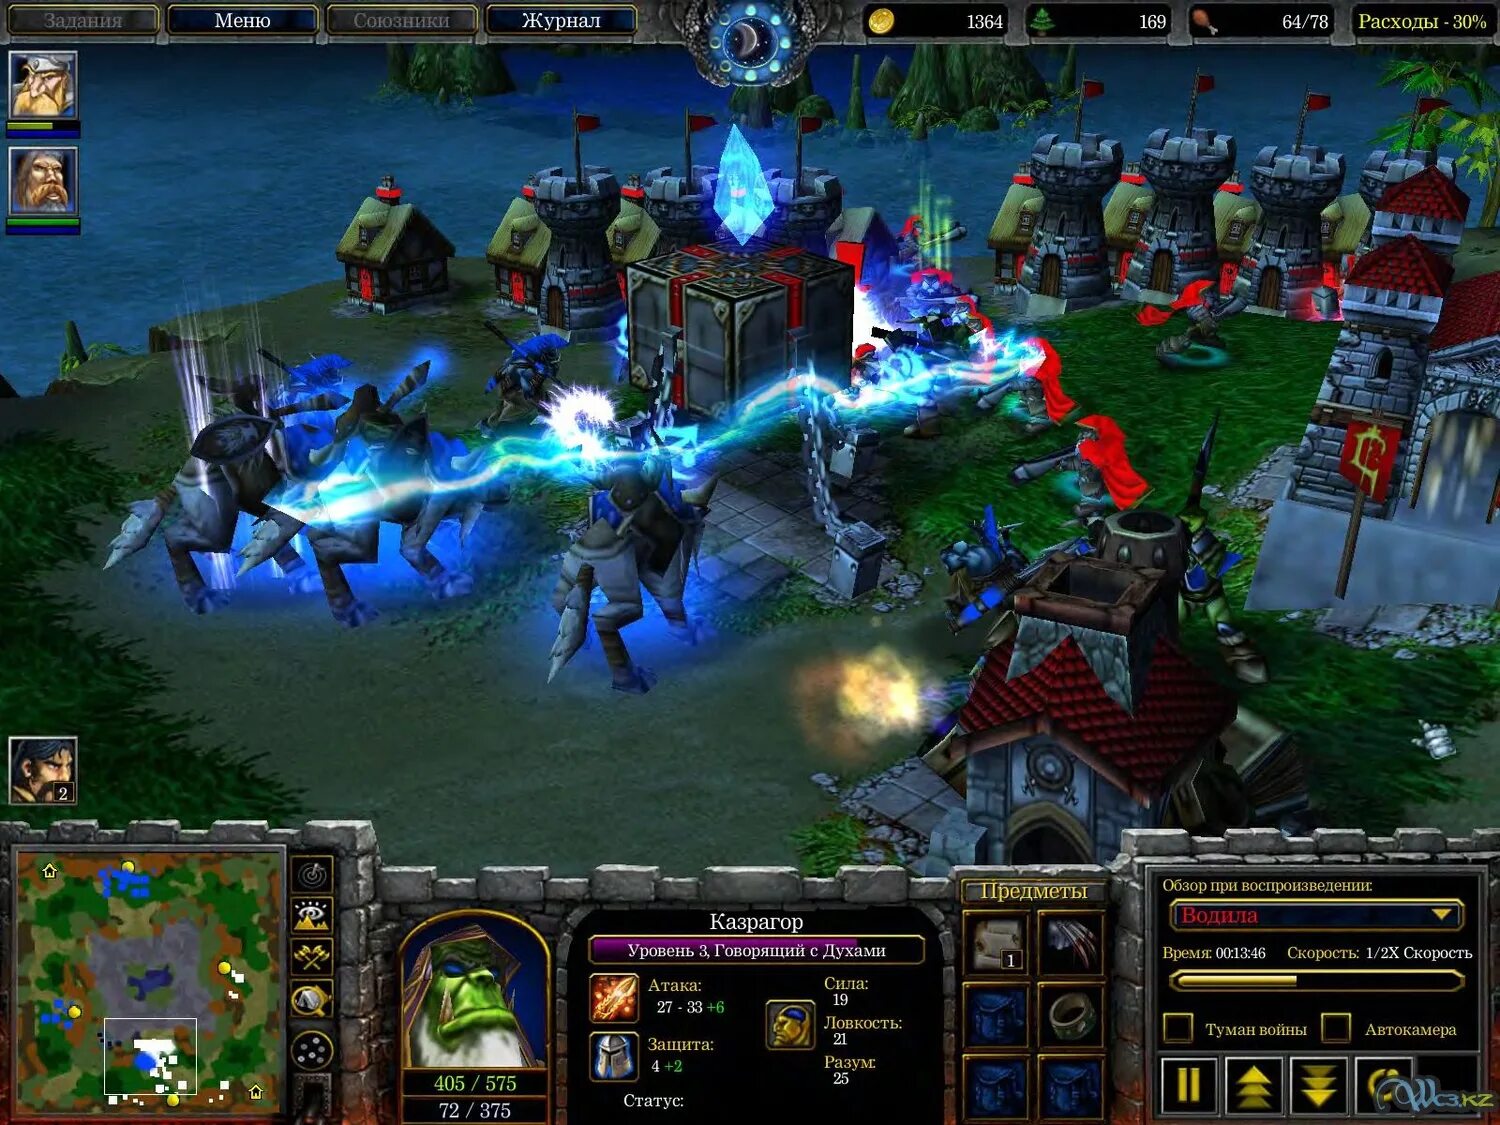 Warcraft 3 как играть. Варкрафт 3 2002. Варкрафт 3 игра. Warcraft III Fronzen Trone 2002 screemshot. Warcraft III Frozen Throne 2002 screenshot.